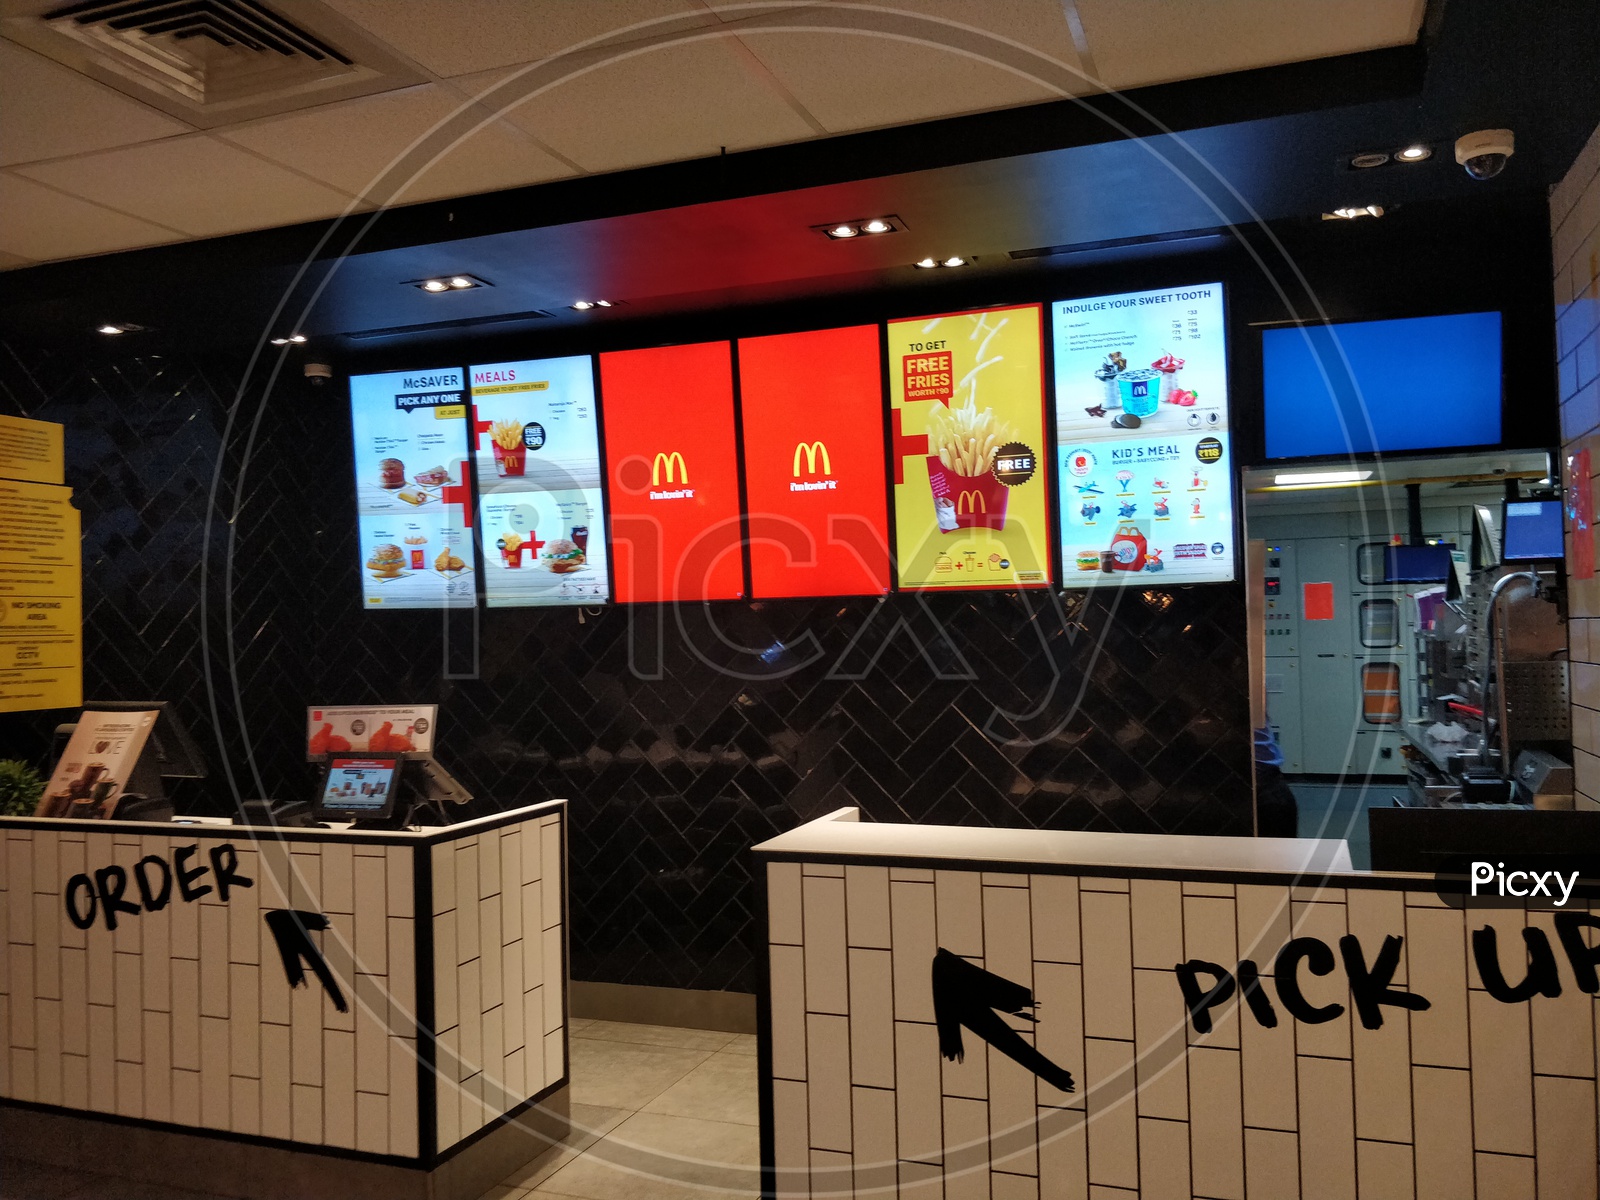 McDonald's order kiosk with display menu